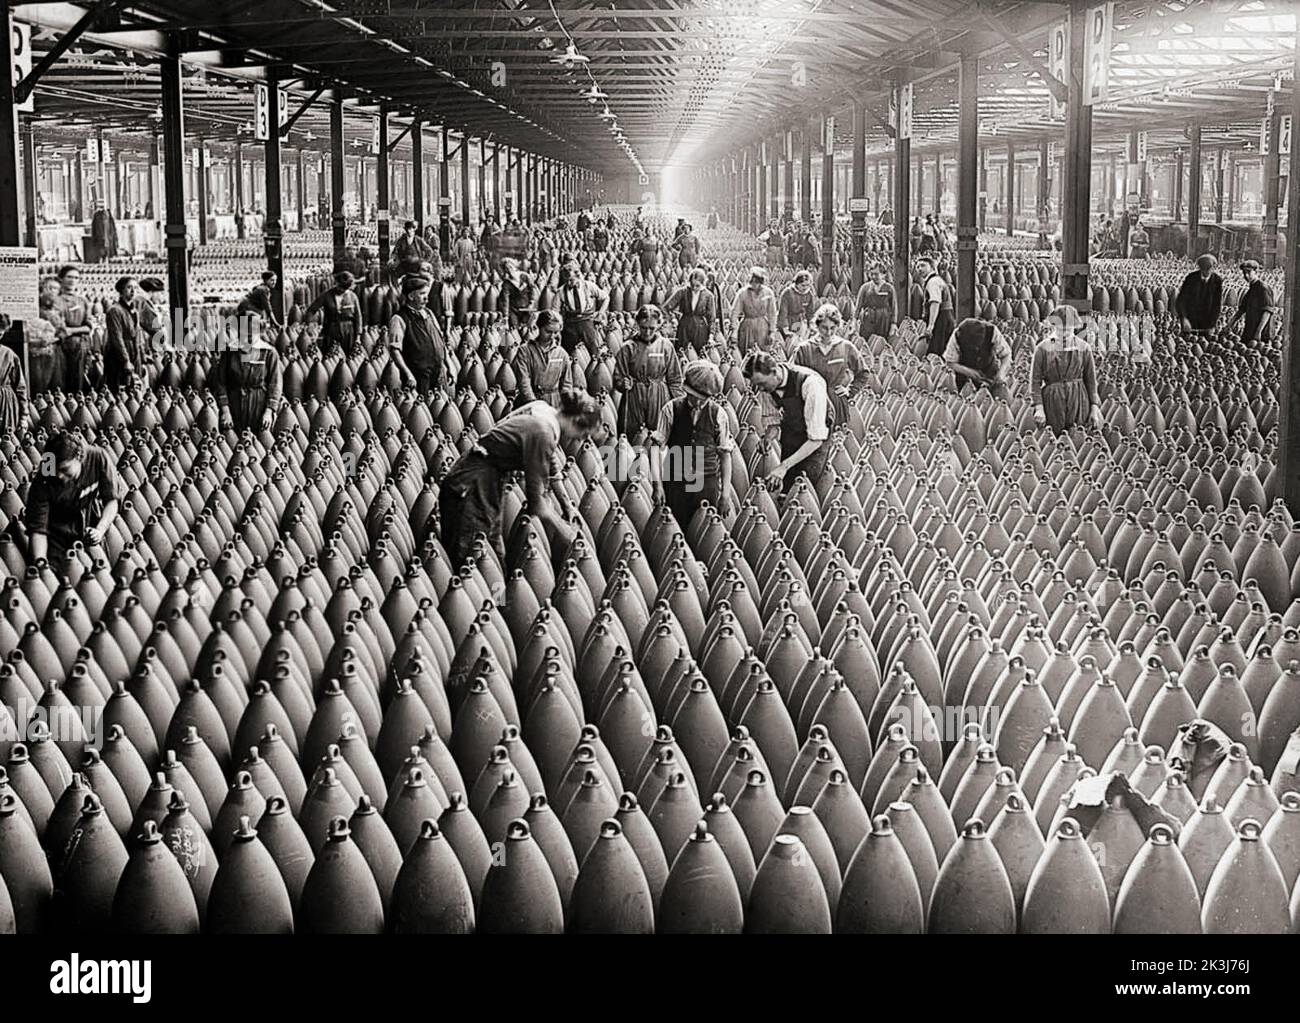 Fábrica Nacional de Llenado en Chilwell en 1917. Durante la Primera Guerra Mundial, un gran número de mujeres fueron reclutadas en empleos desocupados por hombres que habían ido a luchar en la guerra. La alta demanda de armas hizo que las fábricas de municiones se convirtieran en el mayor empleador individual de mujeres durante 1918. En 1917, las fábricas de municiones, que empleaban principalmente a trabajadoras, producían el 80% de las armas y proyectiles utilizados por el ejército británico. Foto de stock